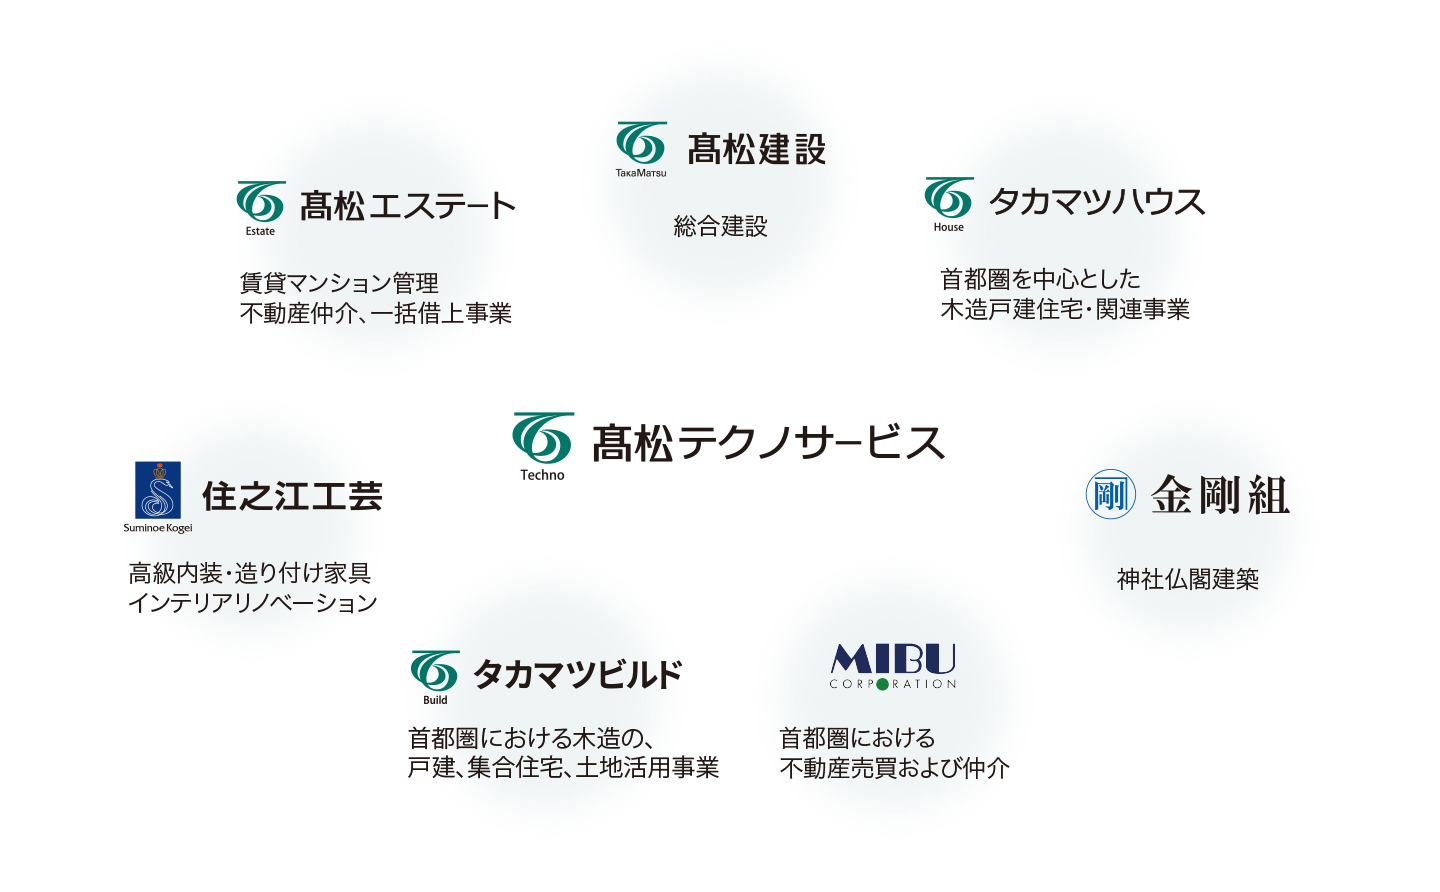 髙松テクノサービスは建築や土木、不動産事業を行う２２社が集うグループの一員です